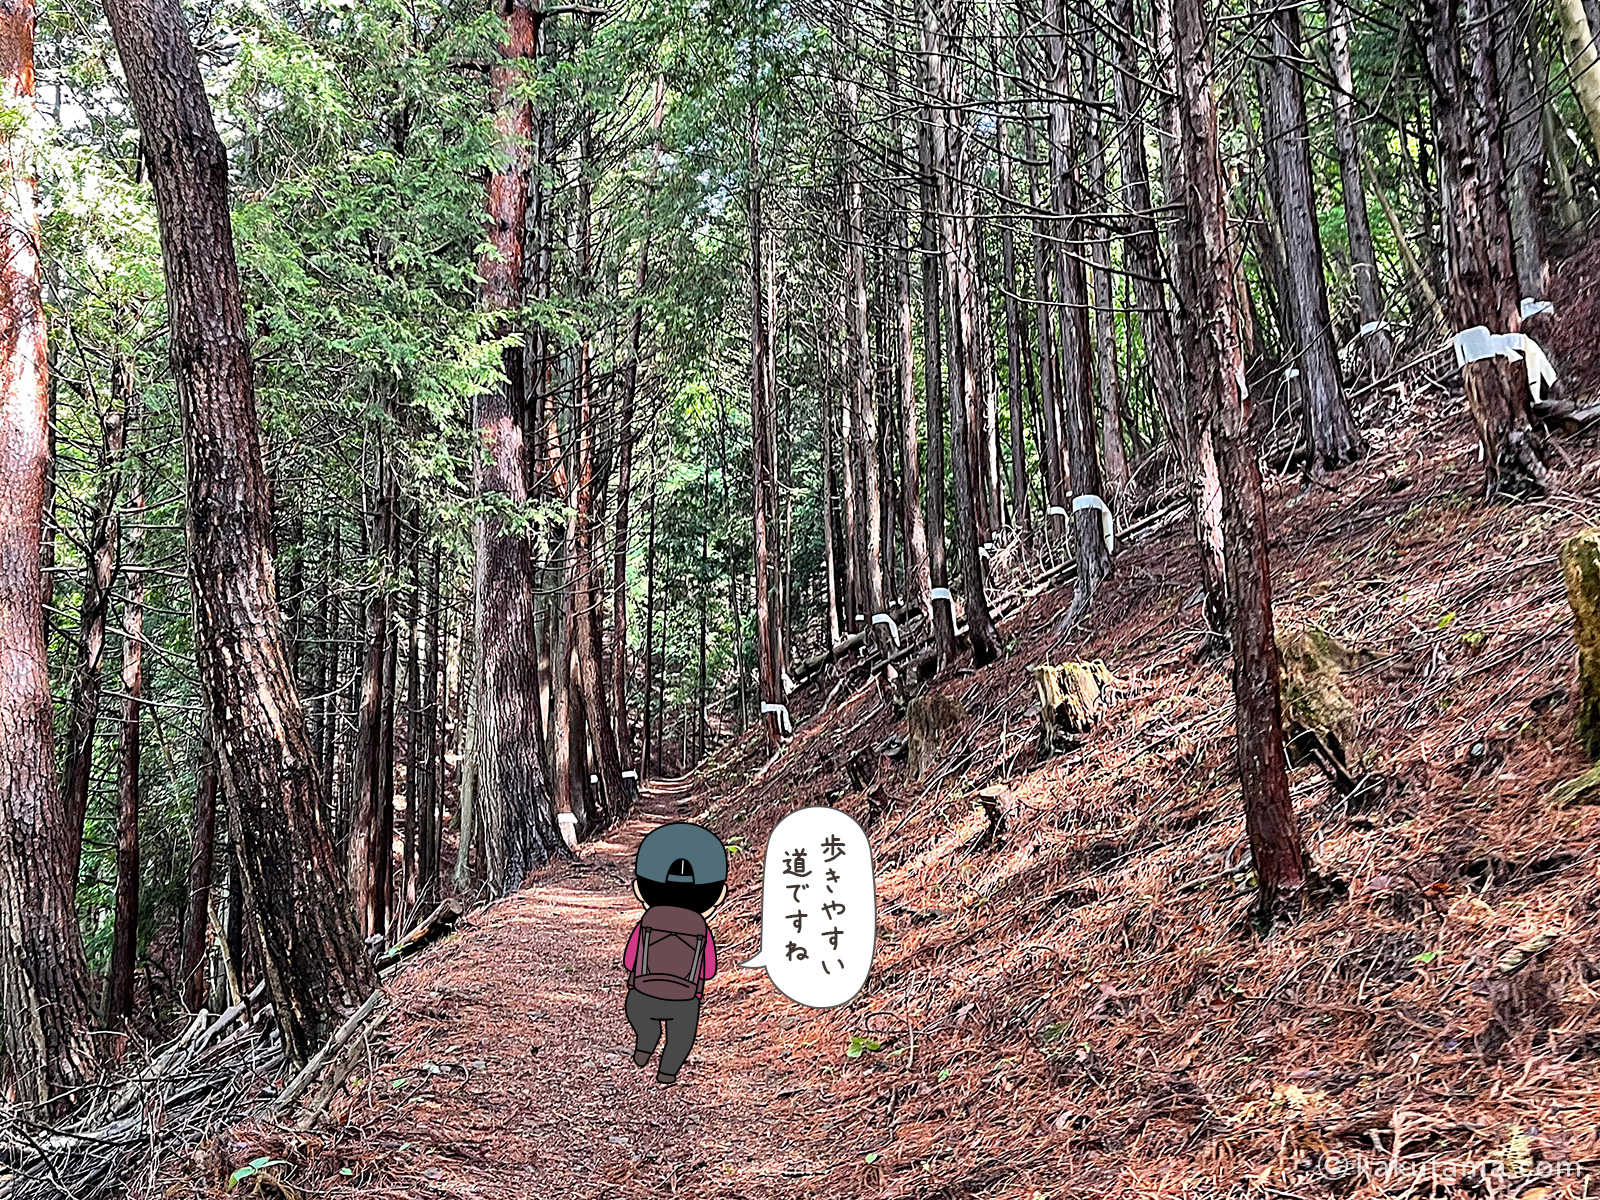 滝子山スミ沢ルートを歩く写真と登山者のイラスト